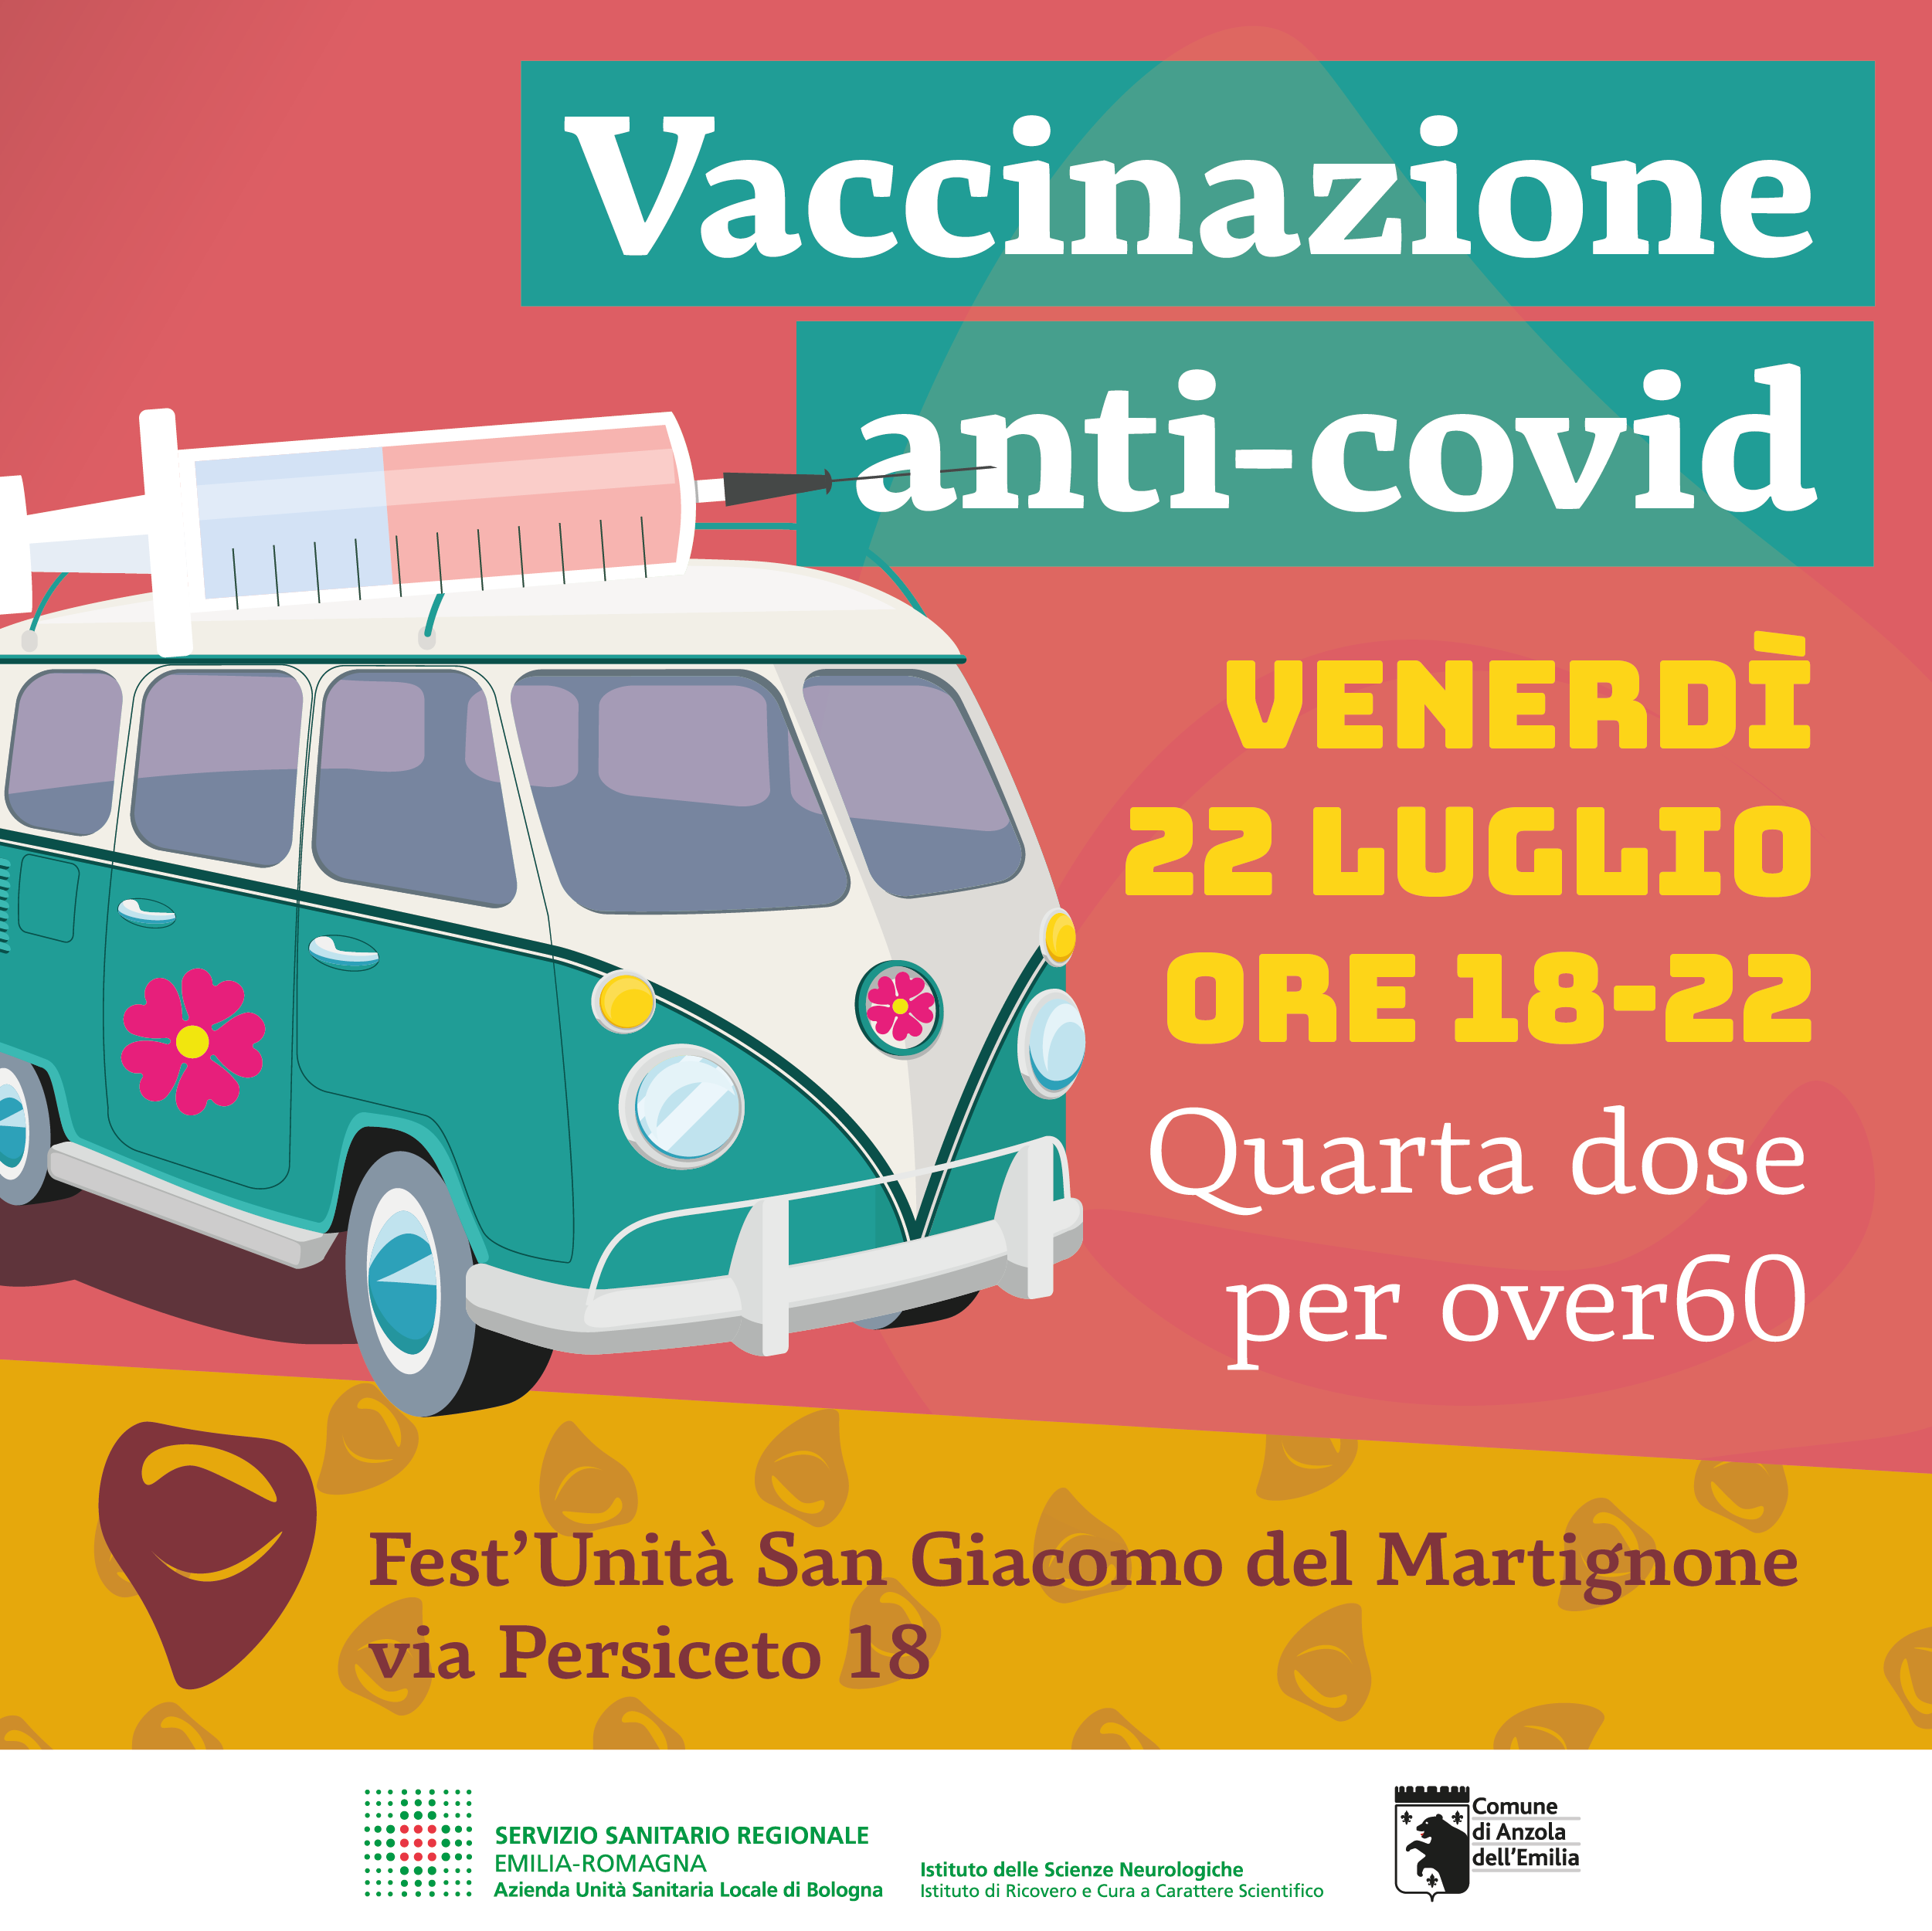 Venerdì 22 luglio vaccinazioni di prossimità con il camper a San Giacomo del Martignone